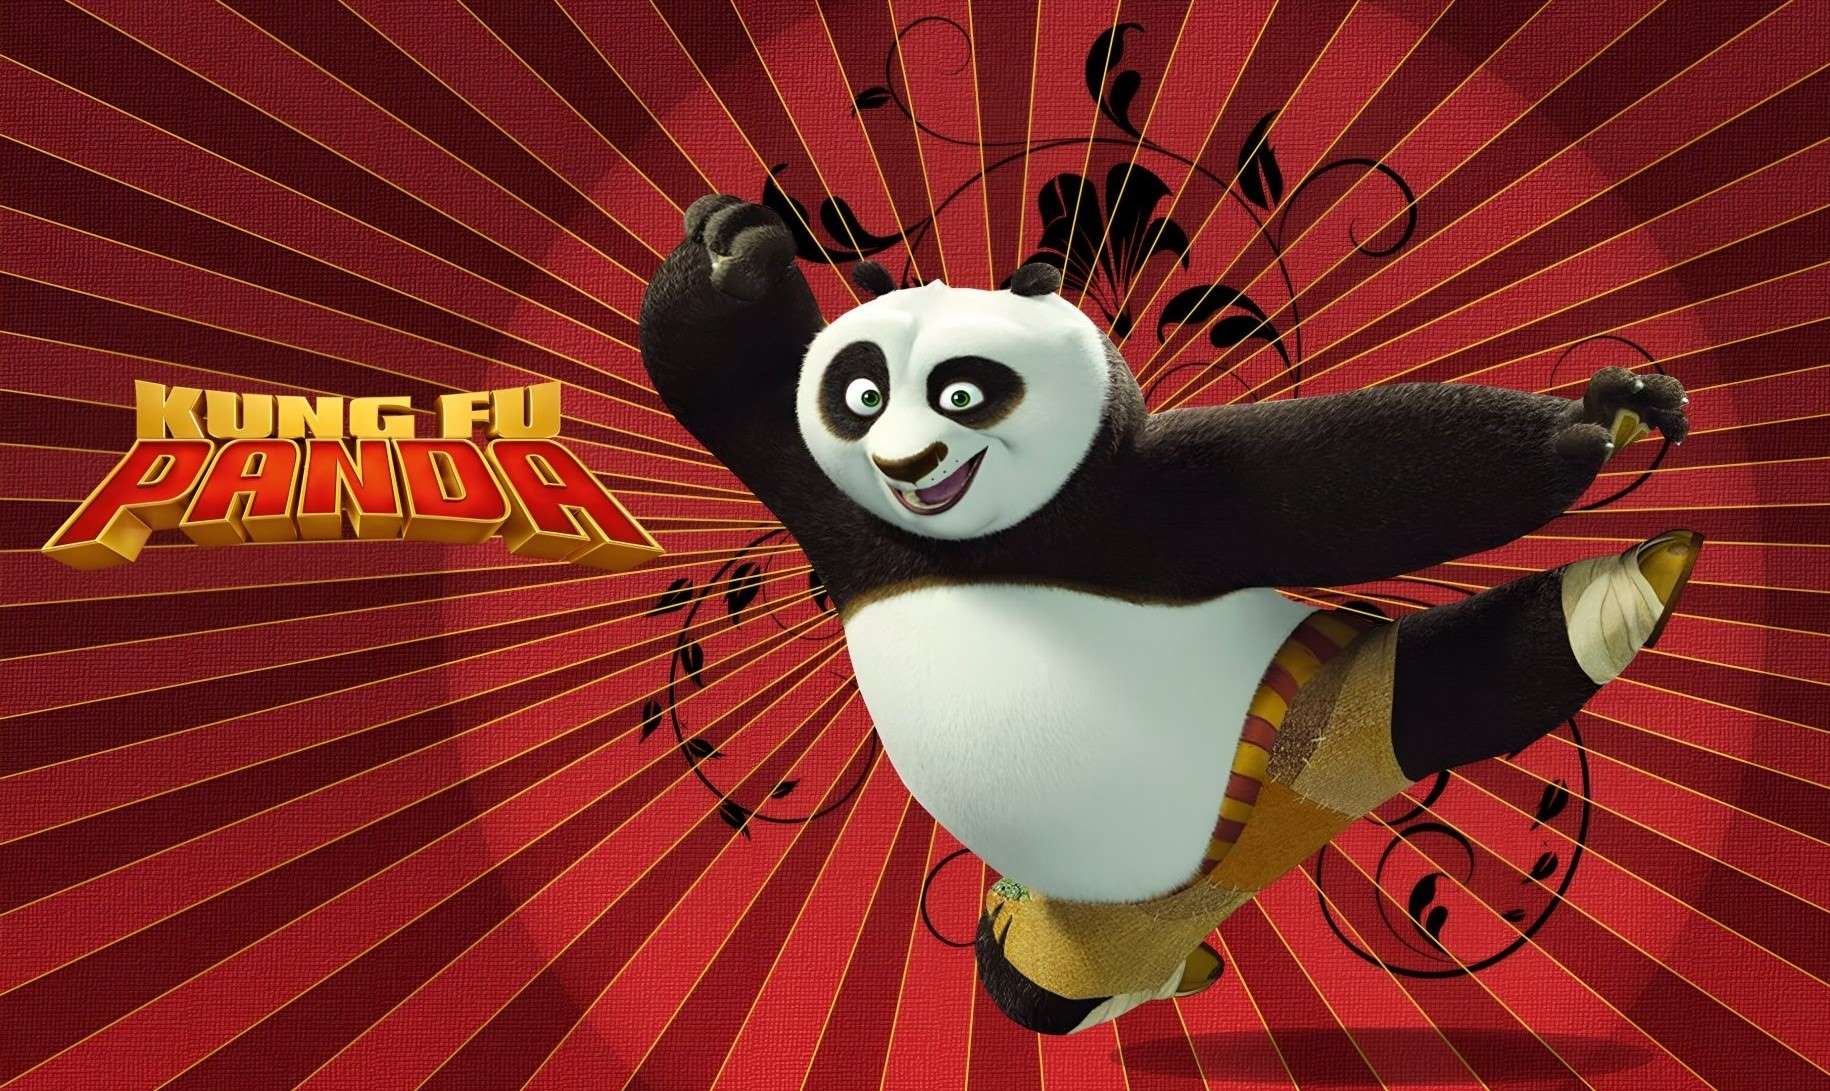 Image of "Kung Fu Panda".